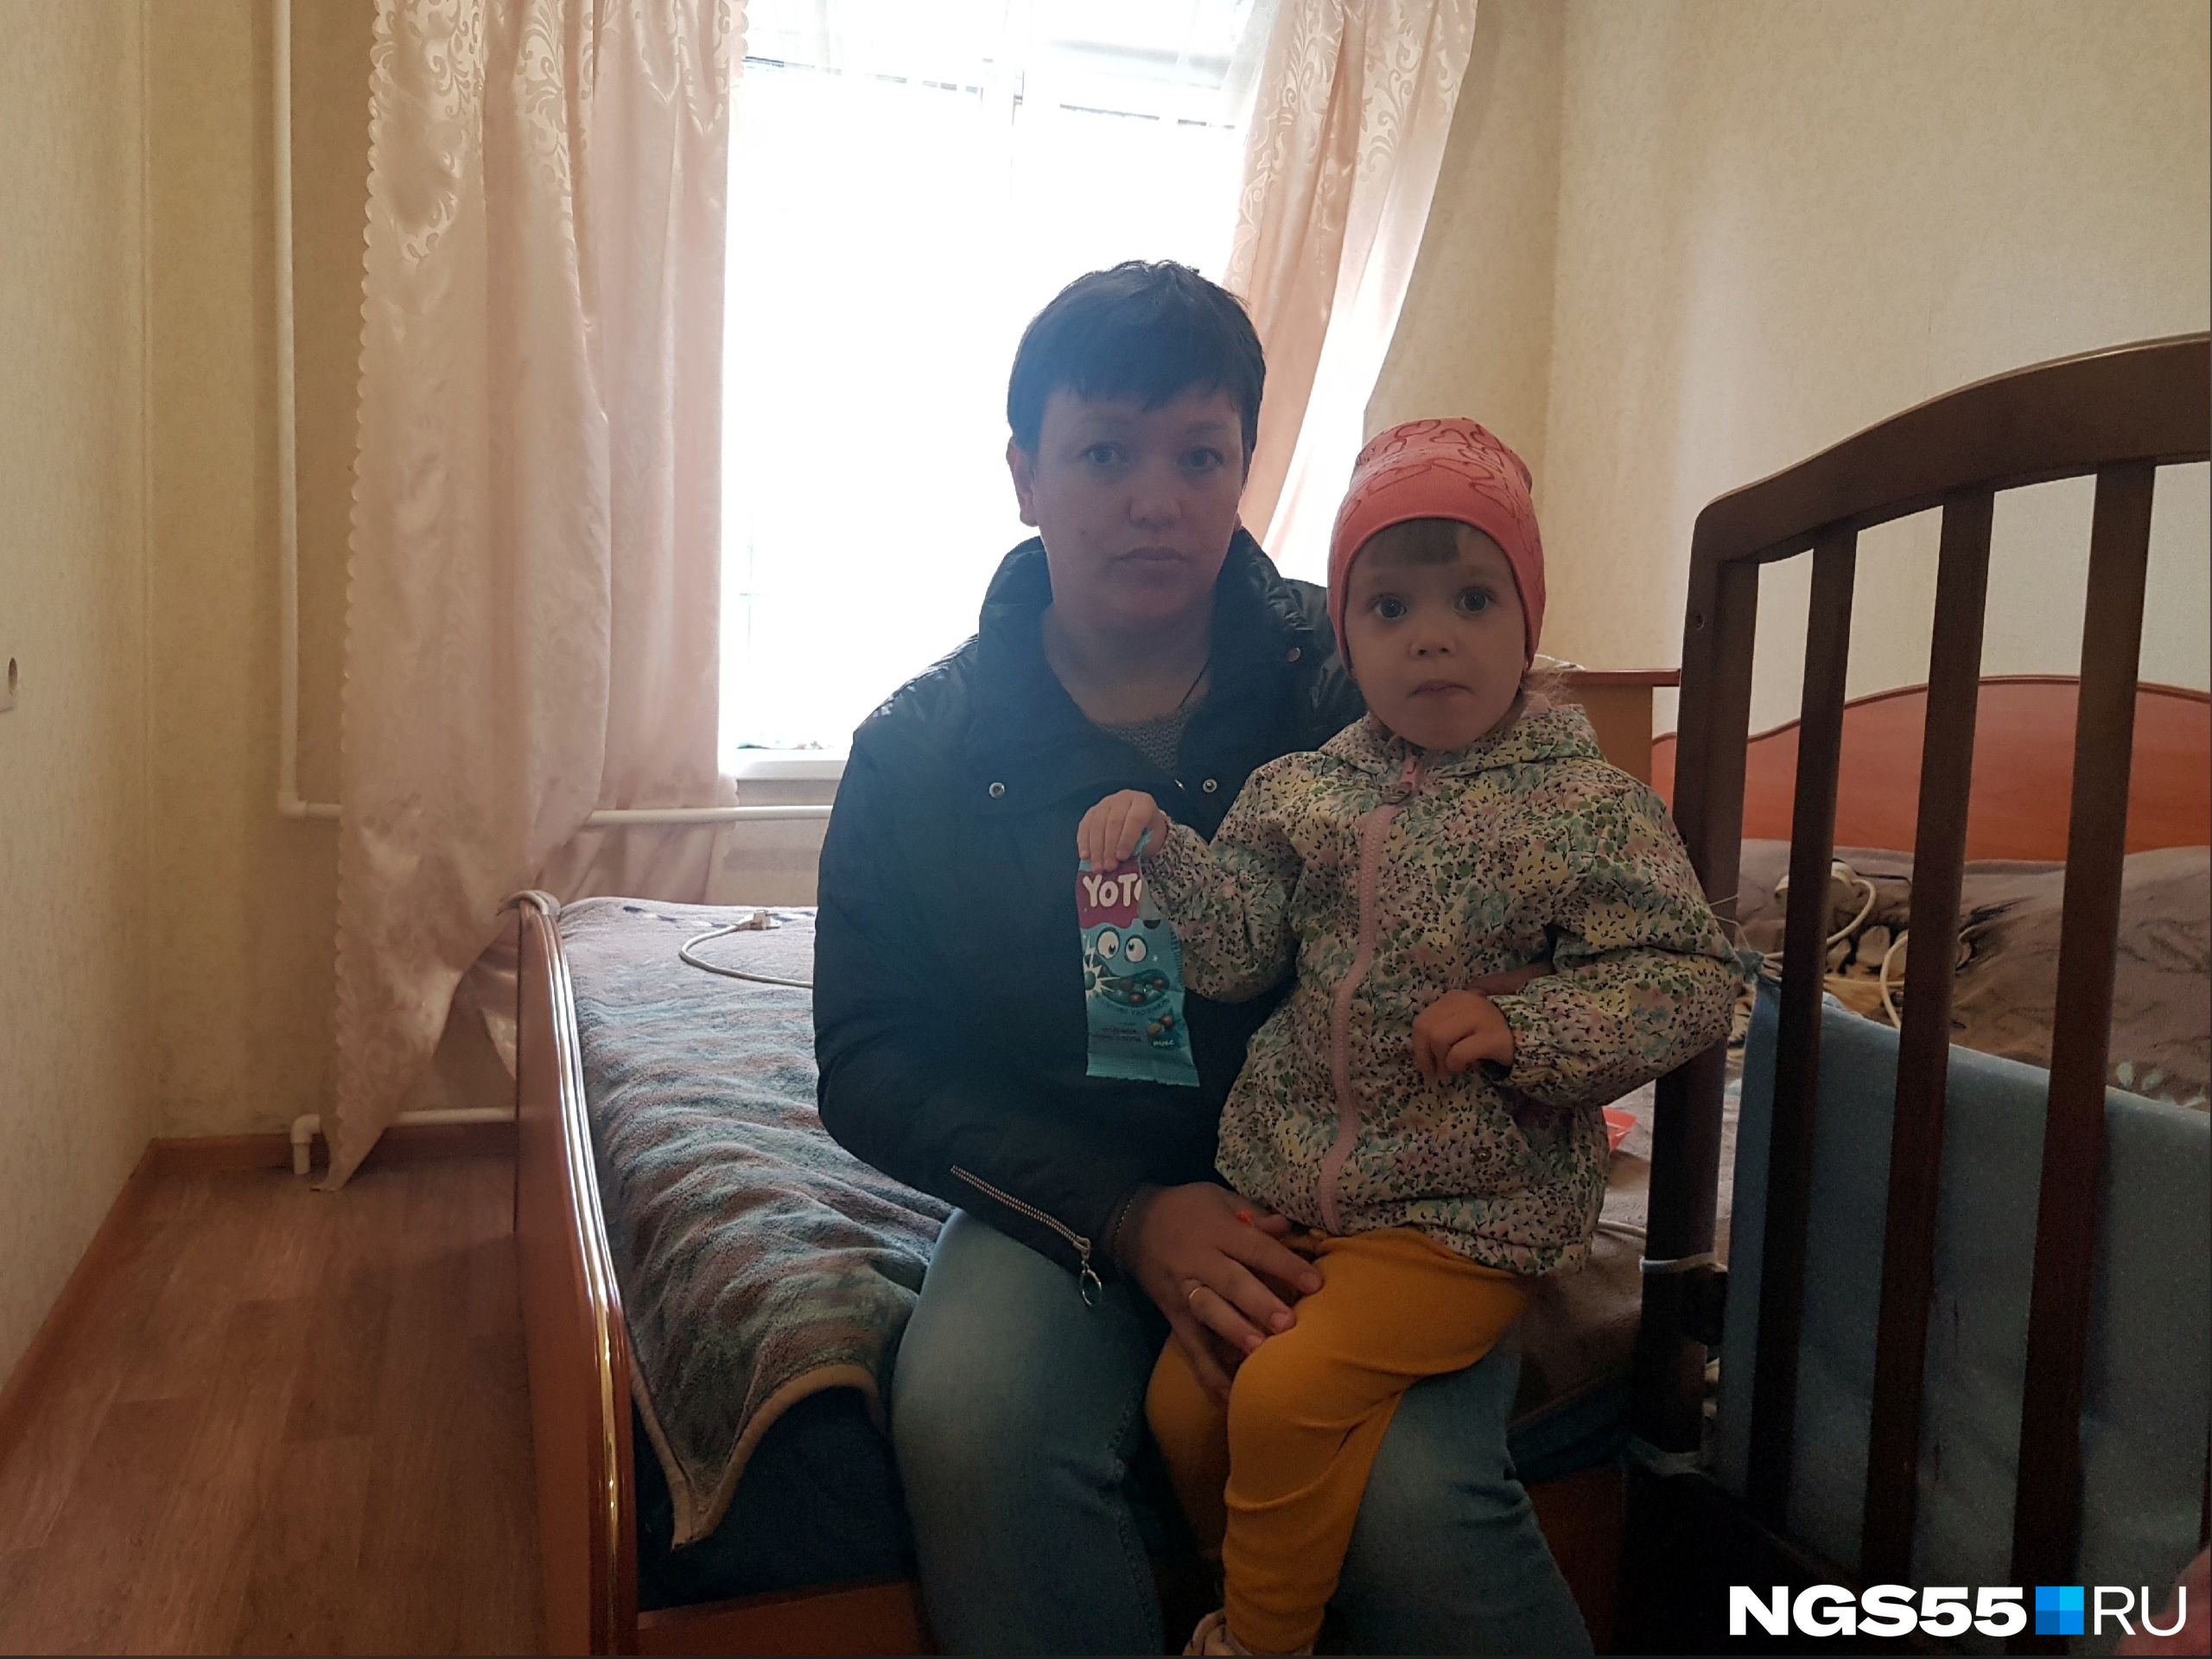 Юлия, как и другие жильцы дома, надеется, что тепло дадут уже в скором времени